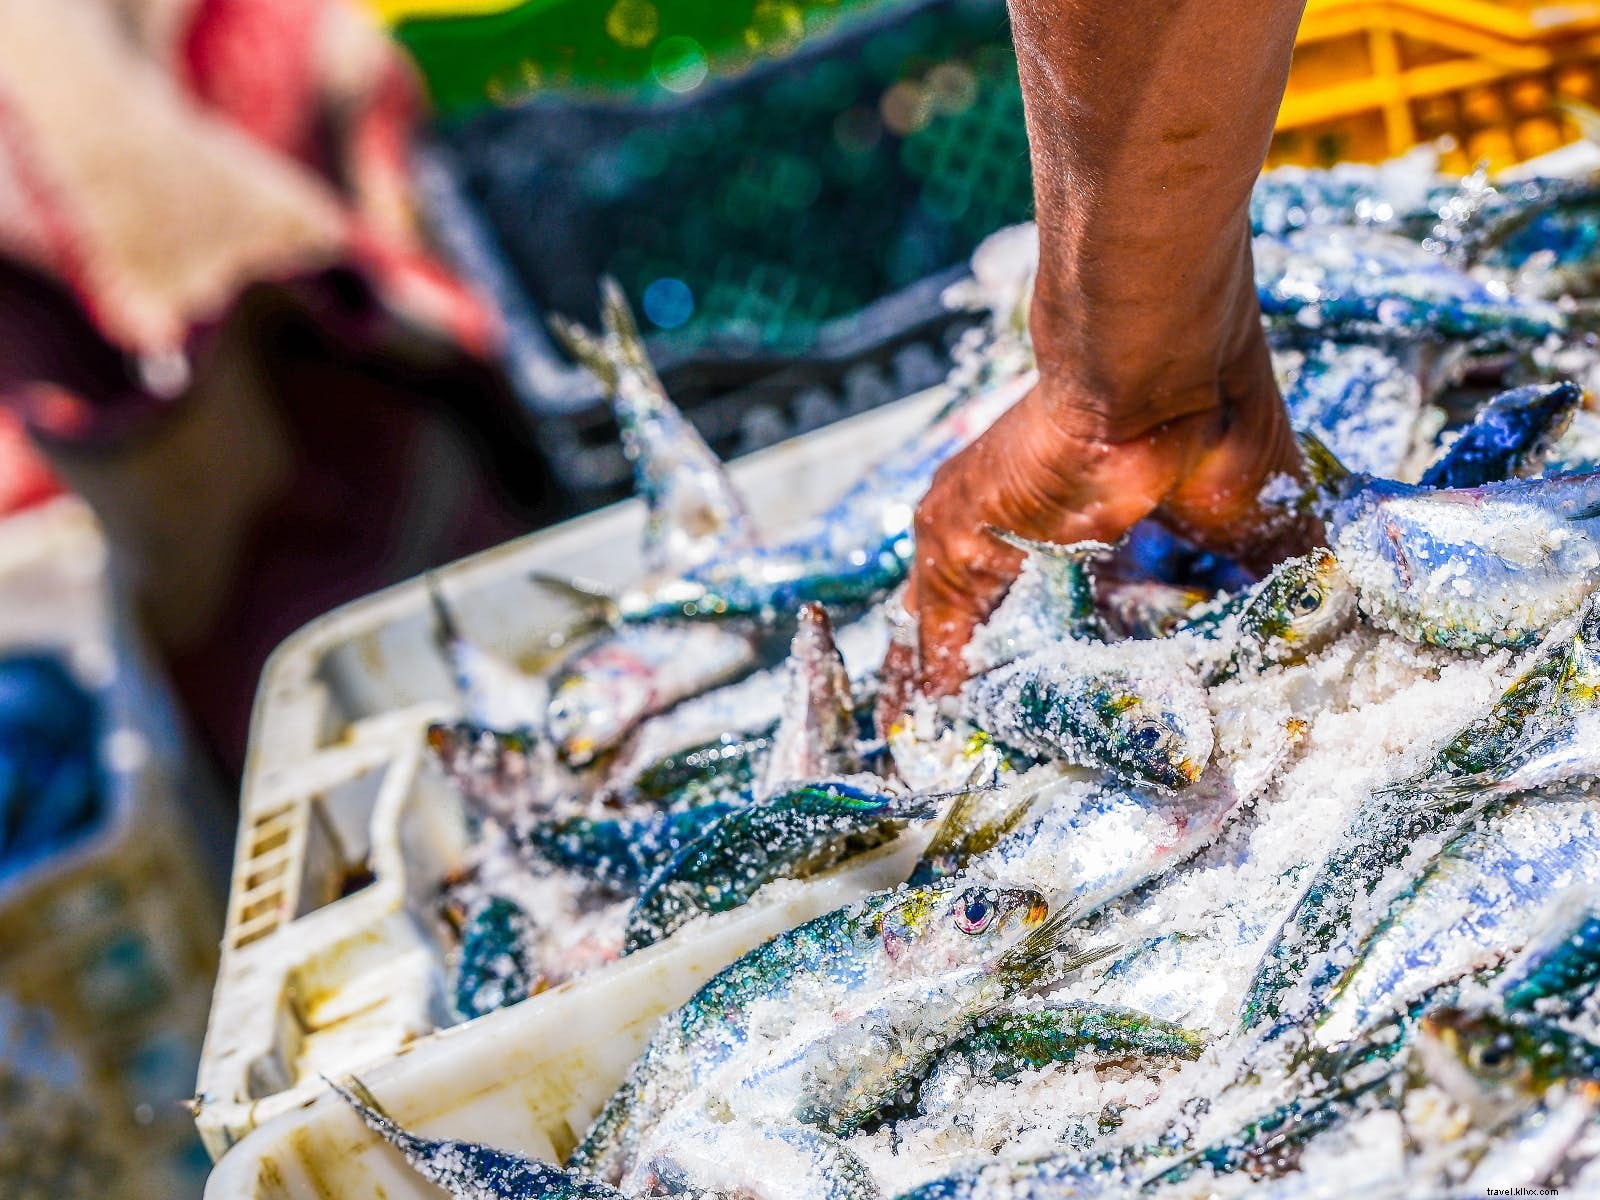 Pas de meilleur plie :neuf spots de fruits de mer sensationnels à travers le monde 